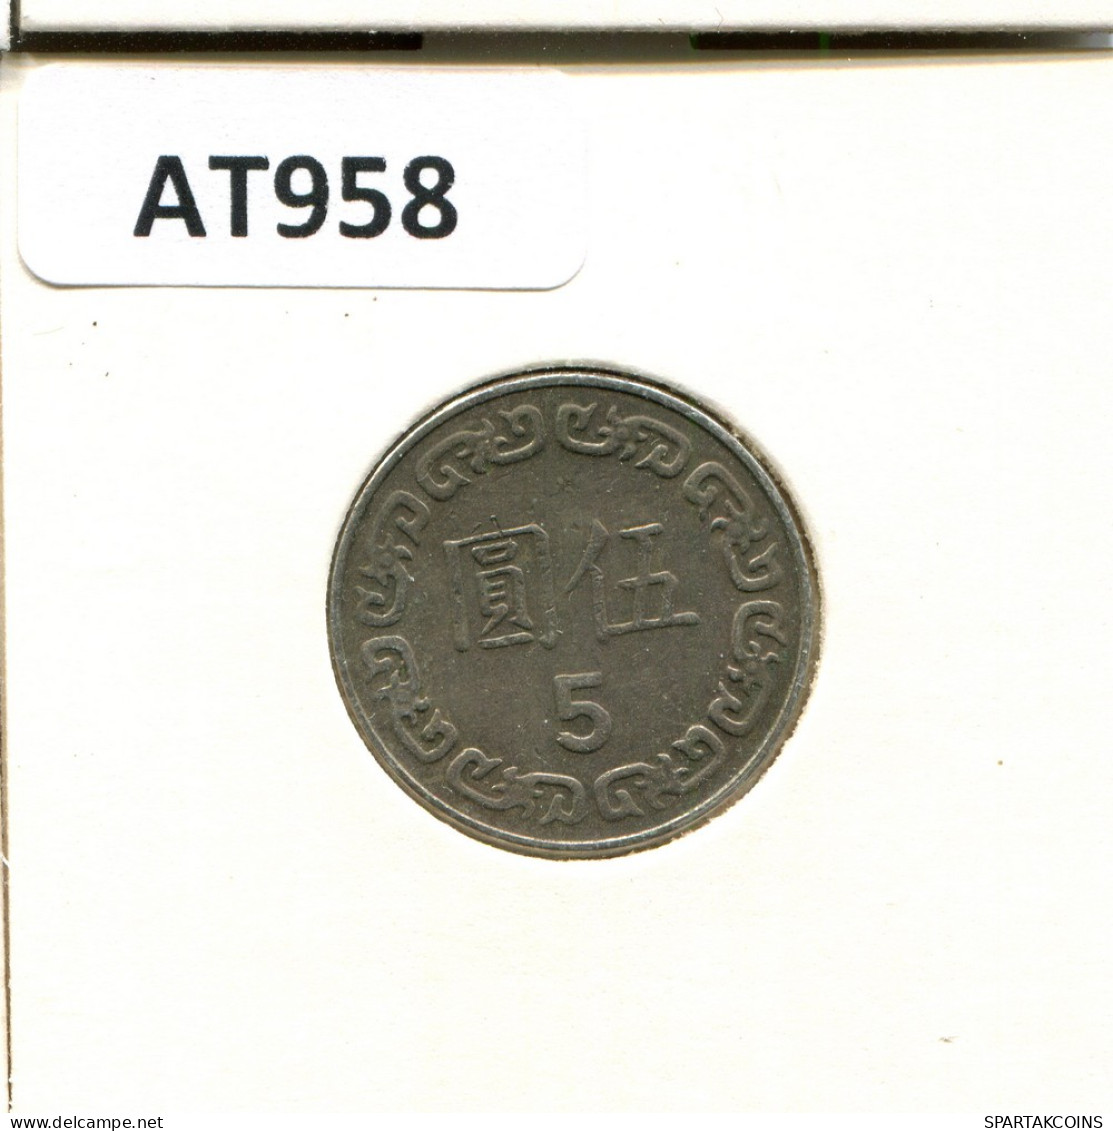 5 YUAN 1982 TAIWAN Coin #AT958.U - Taiwan